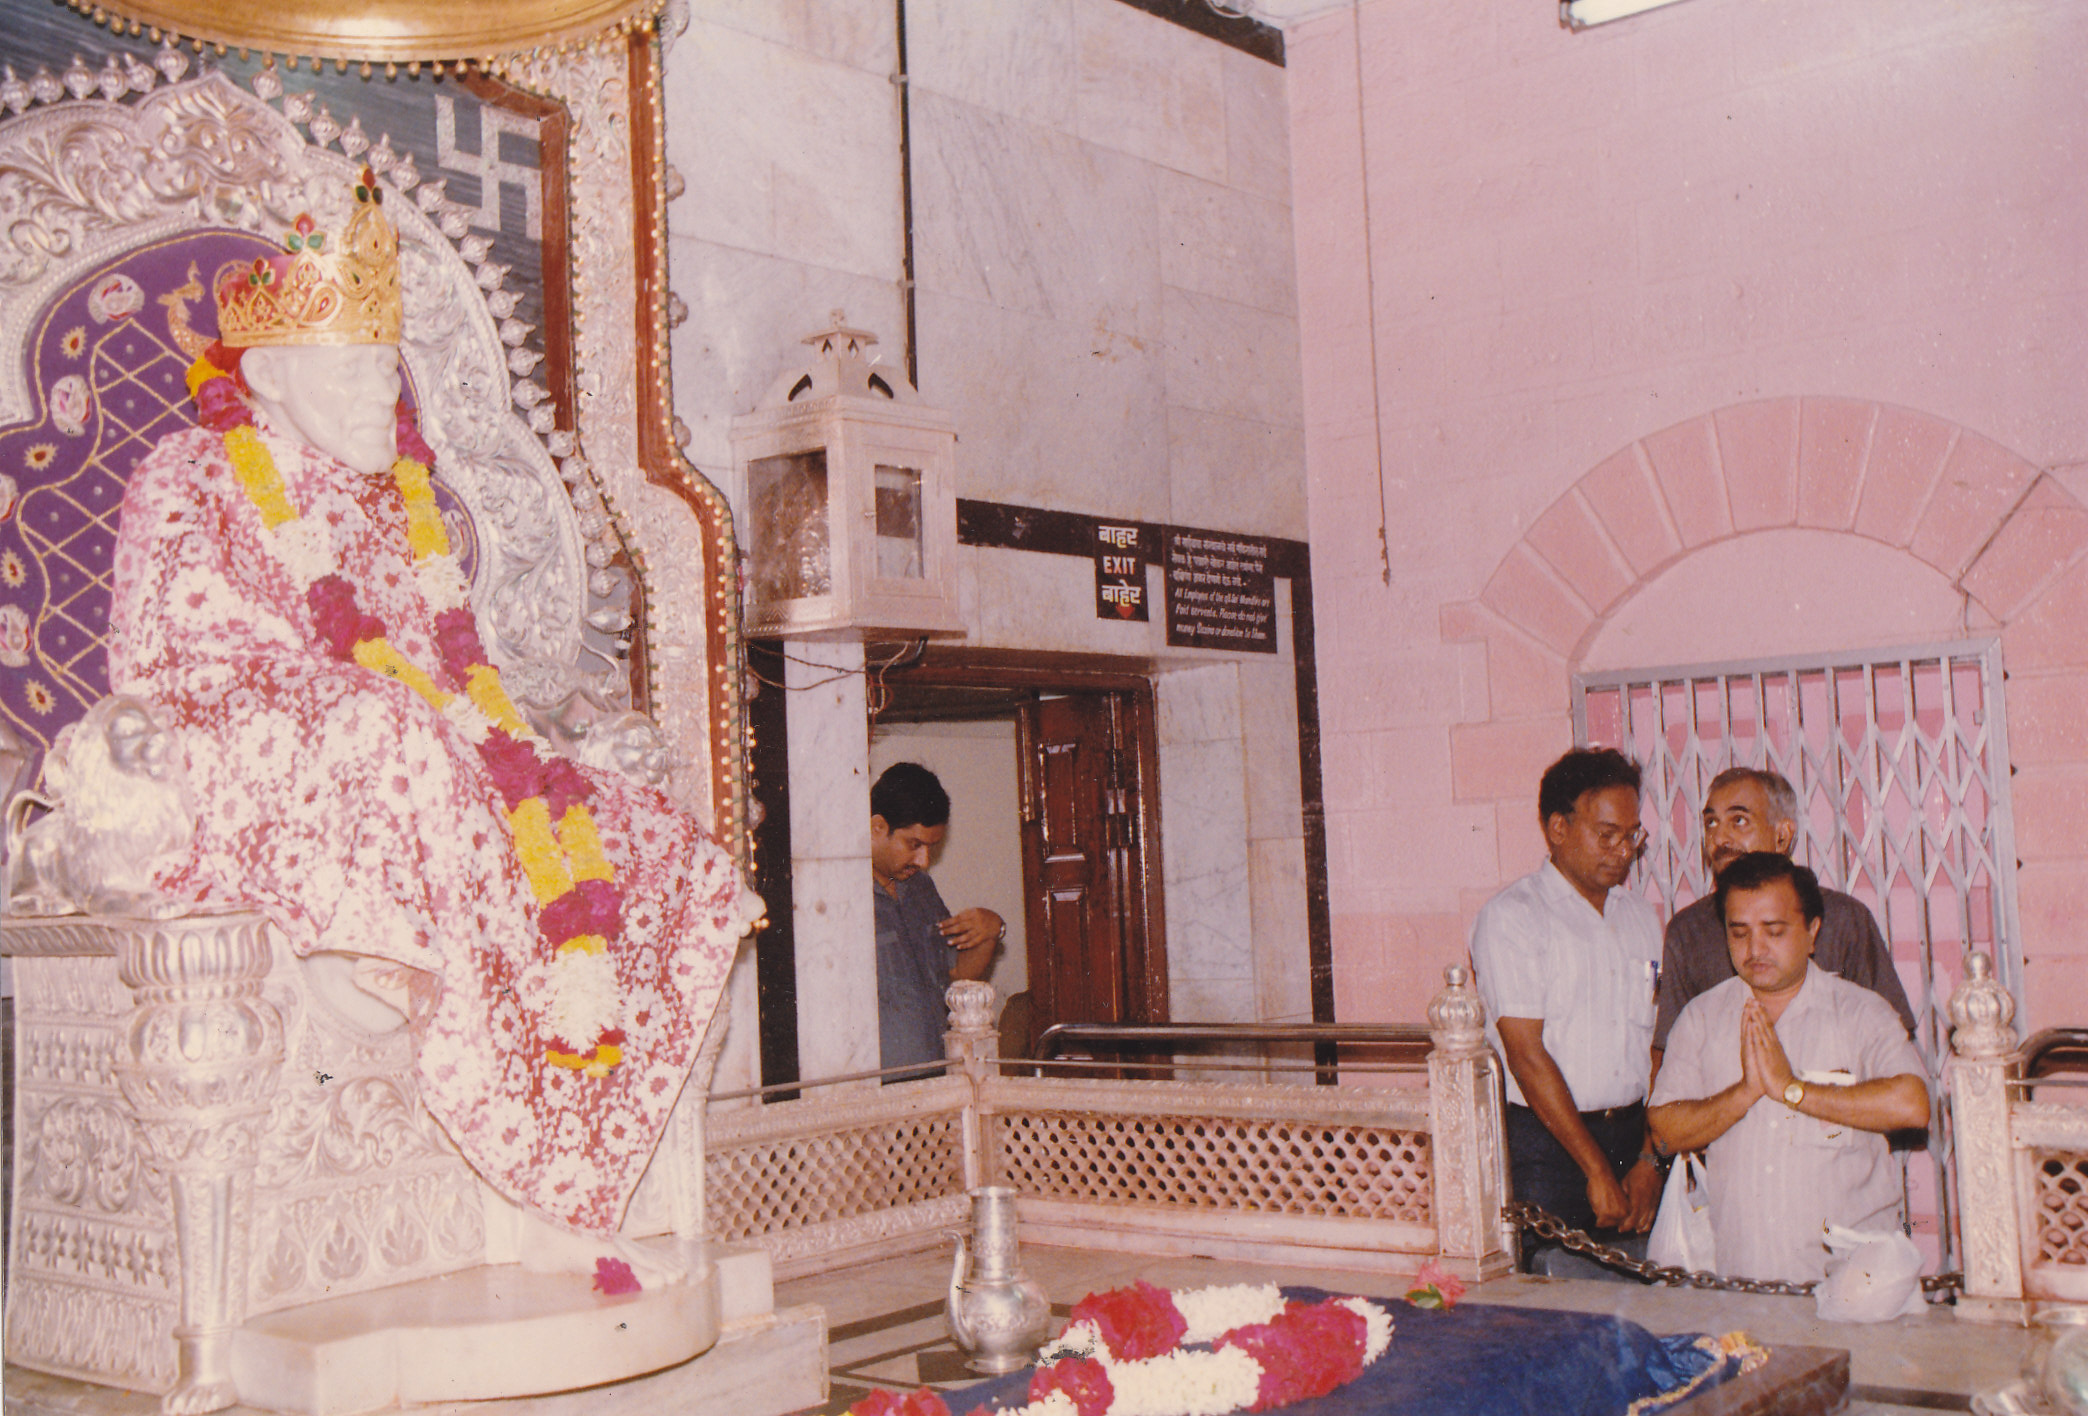 At Shirdi Sai baba Temple